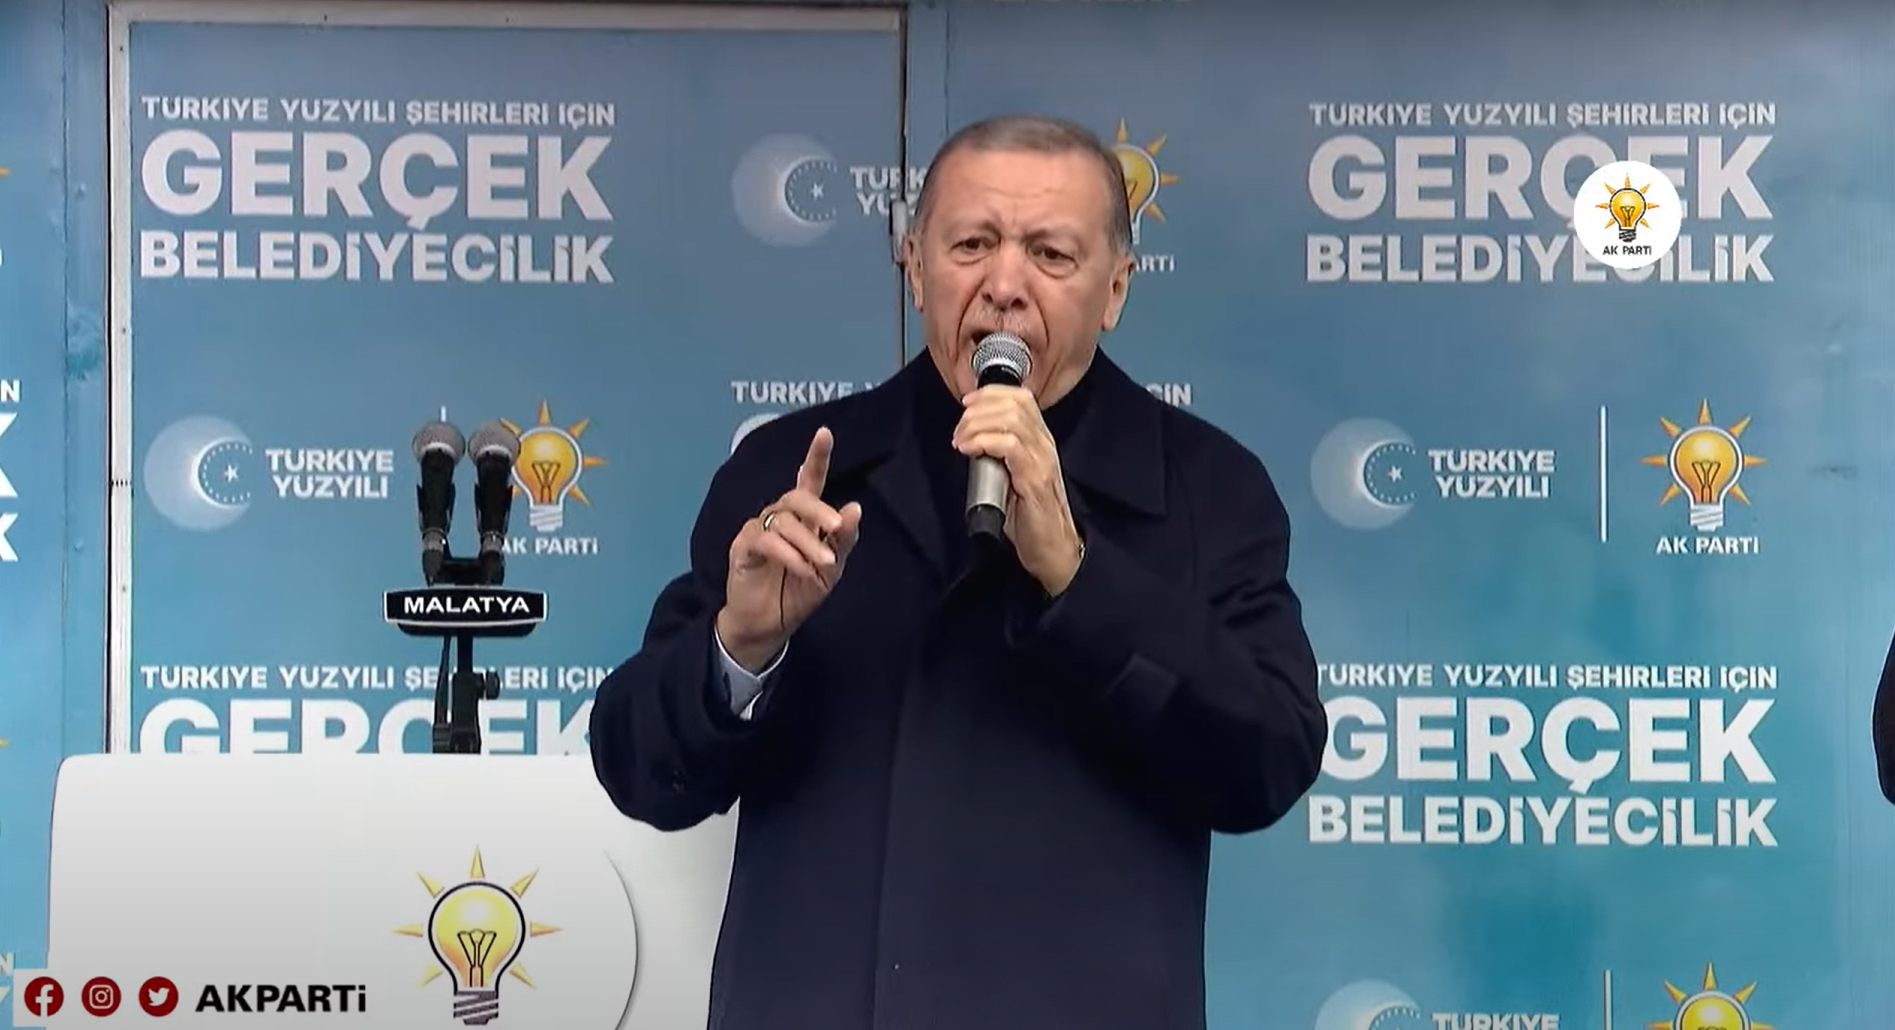 Cumhurbaşkanı Erdoğan'dan Yeniden Refah'a sert tepki: Türkiye bugüne kadar ne çektiyse projesi olmayan zübük siyasetçilerden çekmiştir